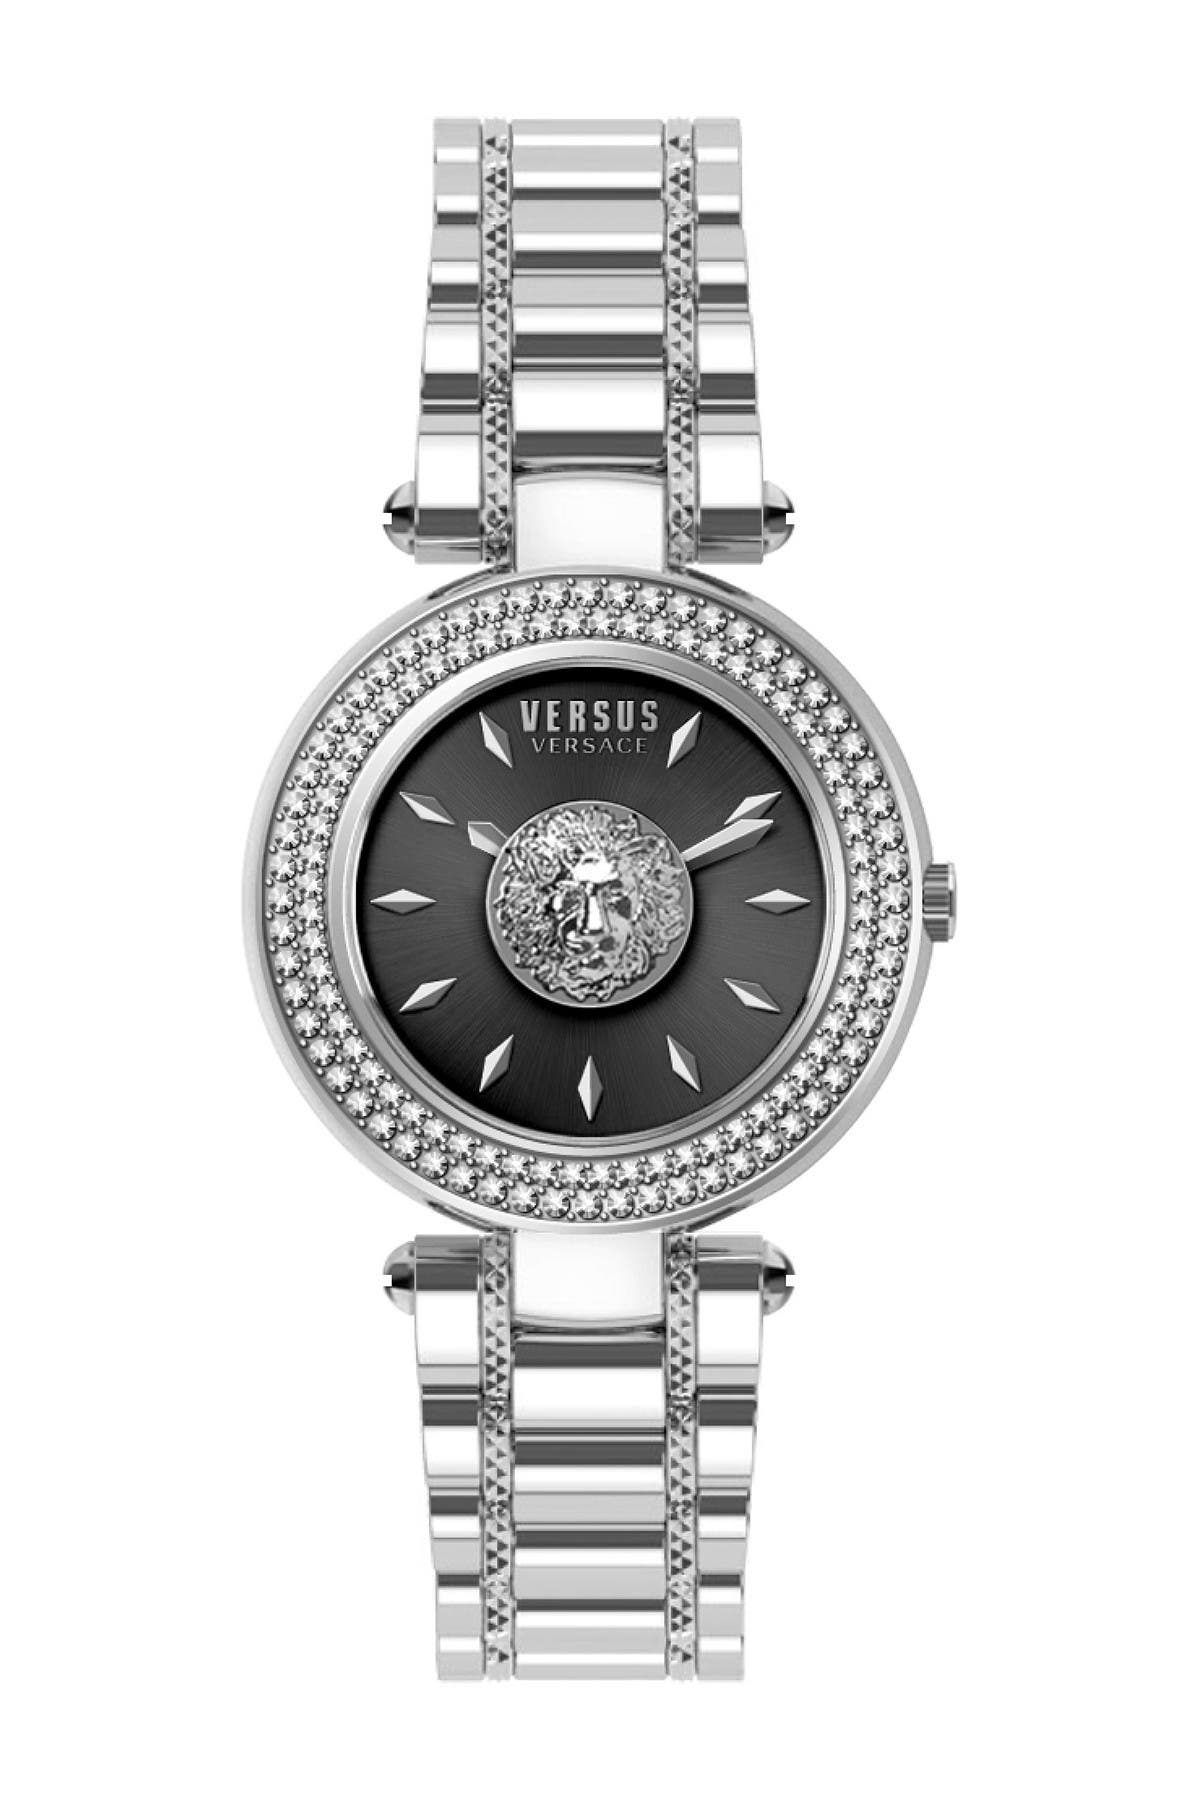 versus versace brick lane bracelet watch